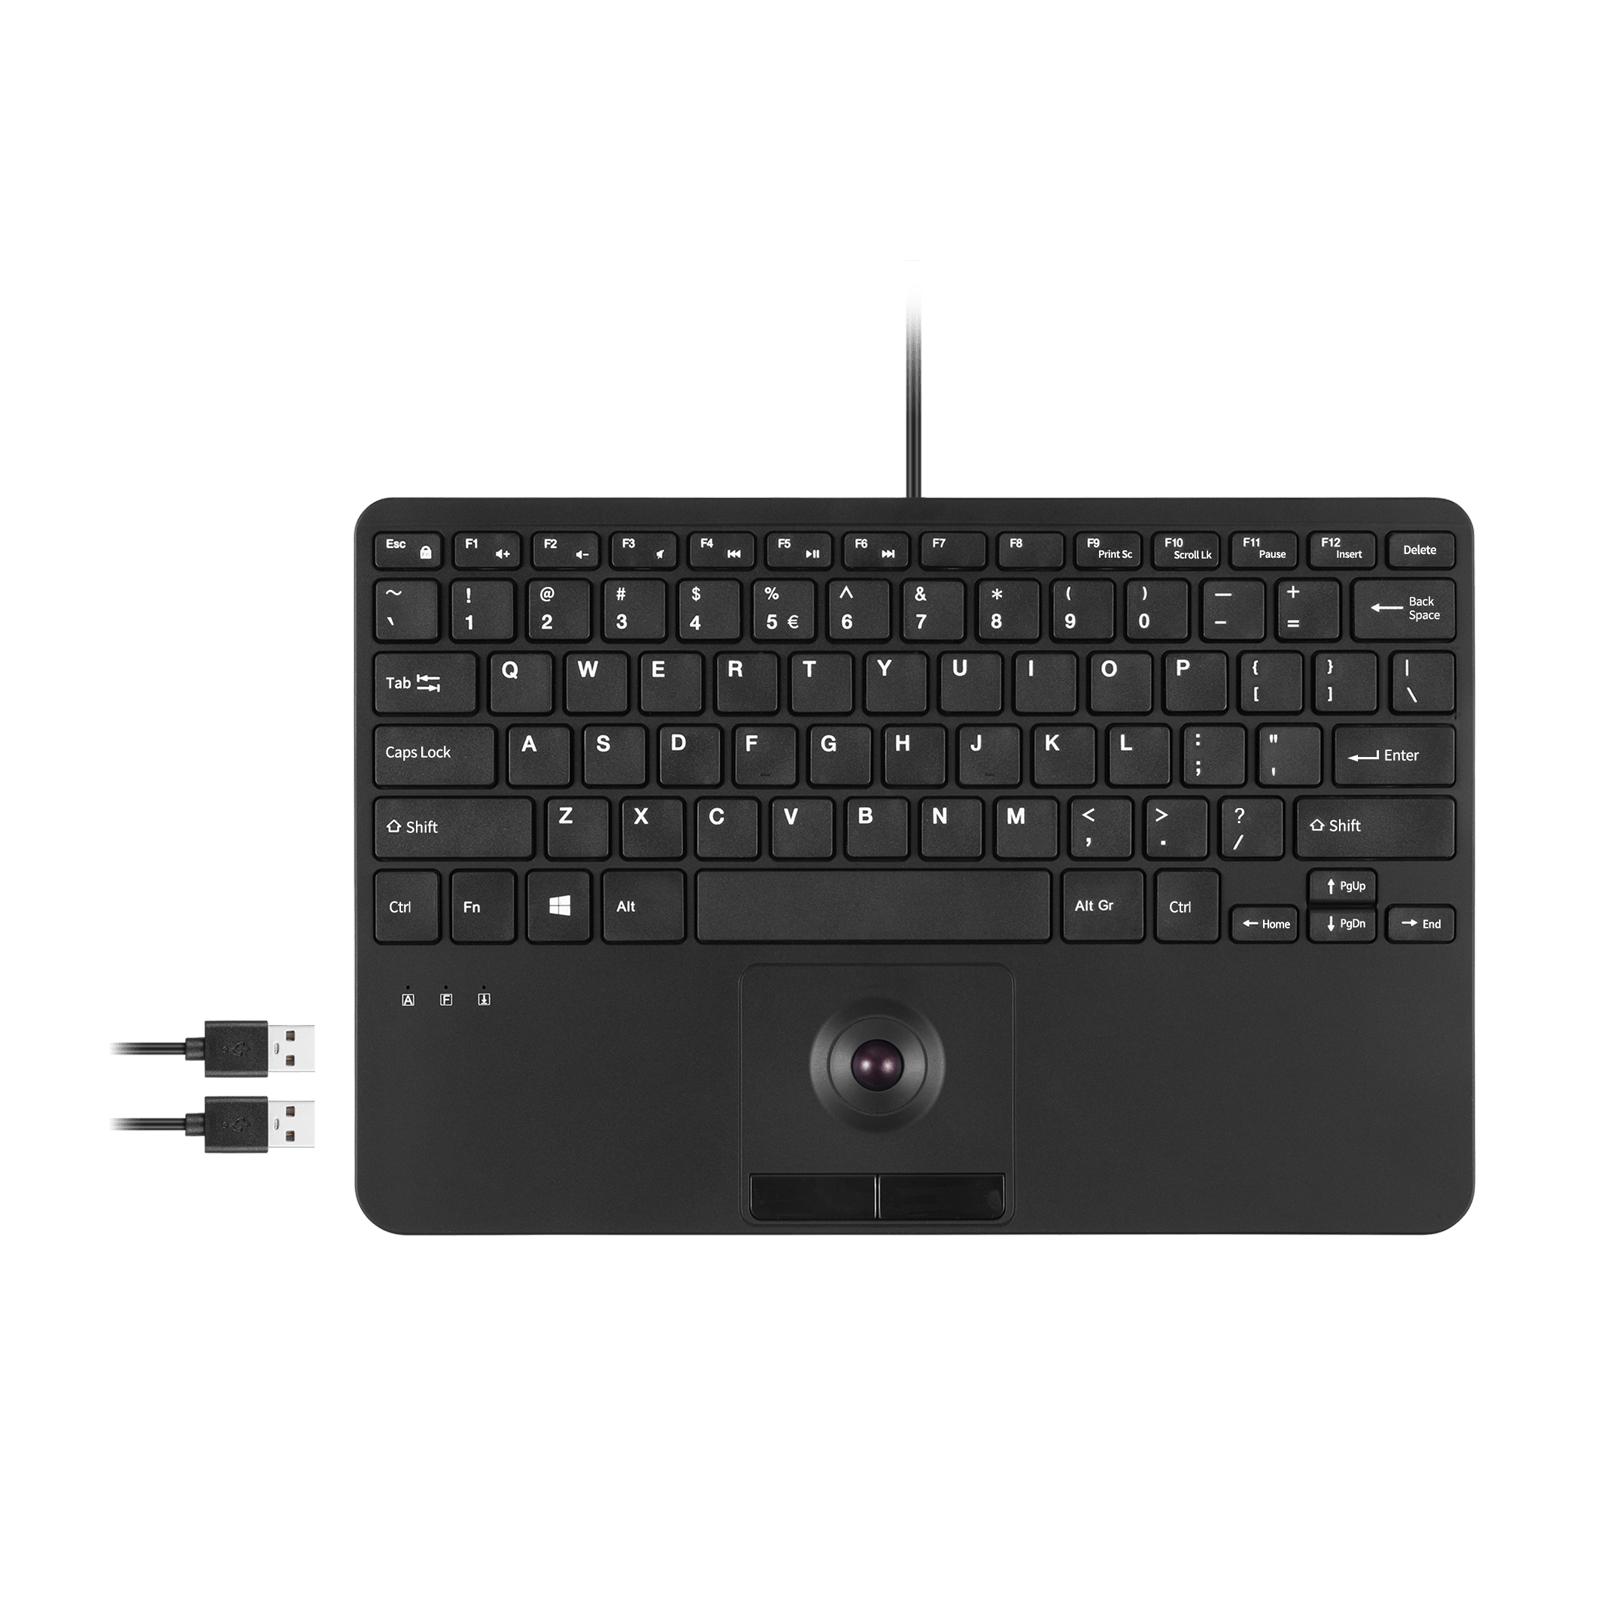 PERIBOARD-526, Wired Mini USB Keyboard with Trackball - Scissor Keys - Build-in 2 USB Hubs - Perixx Europe